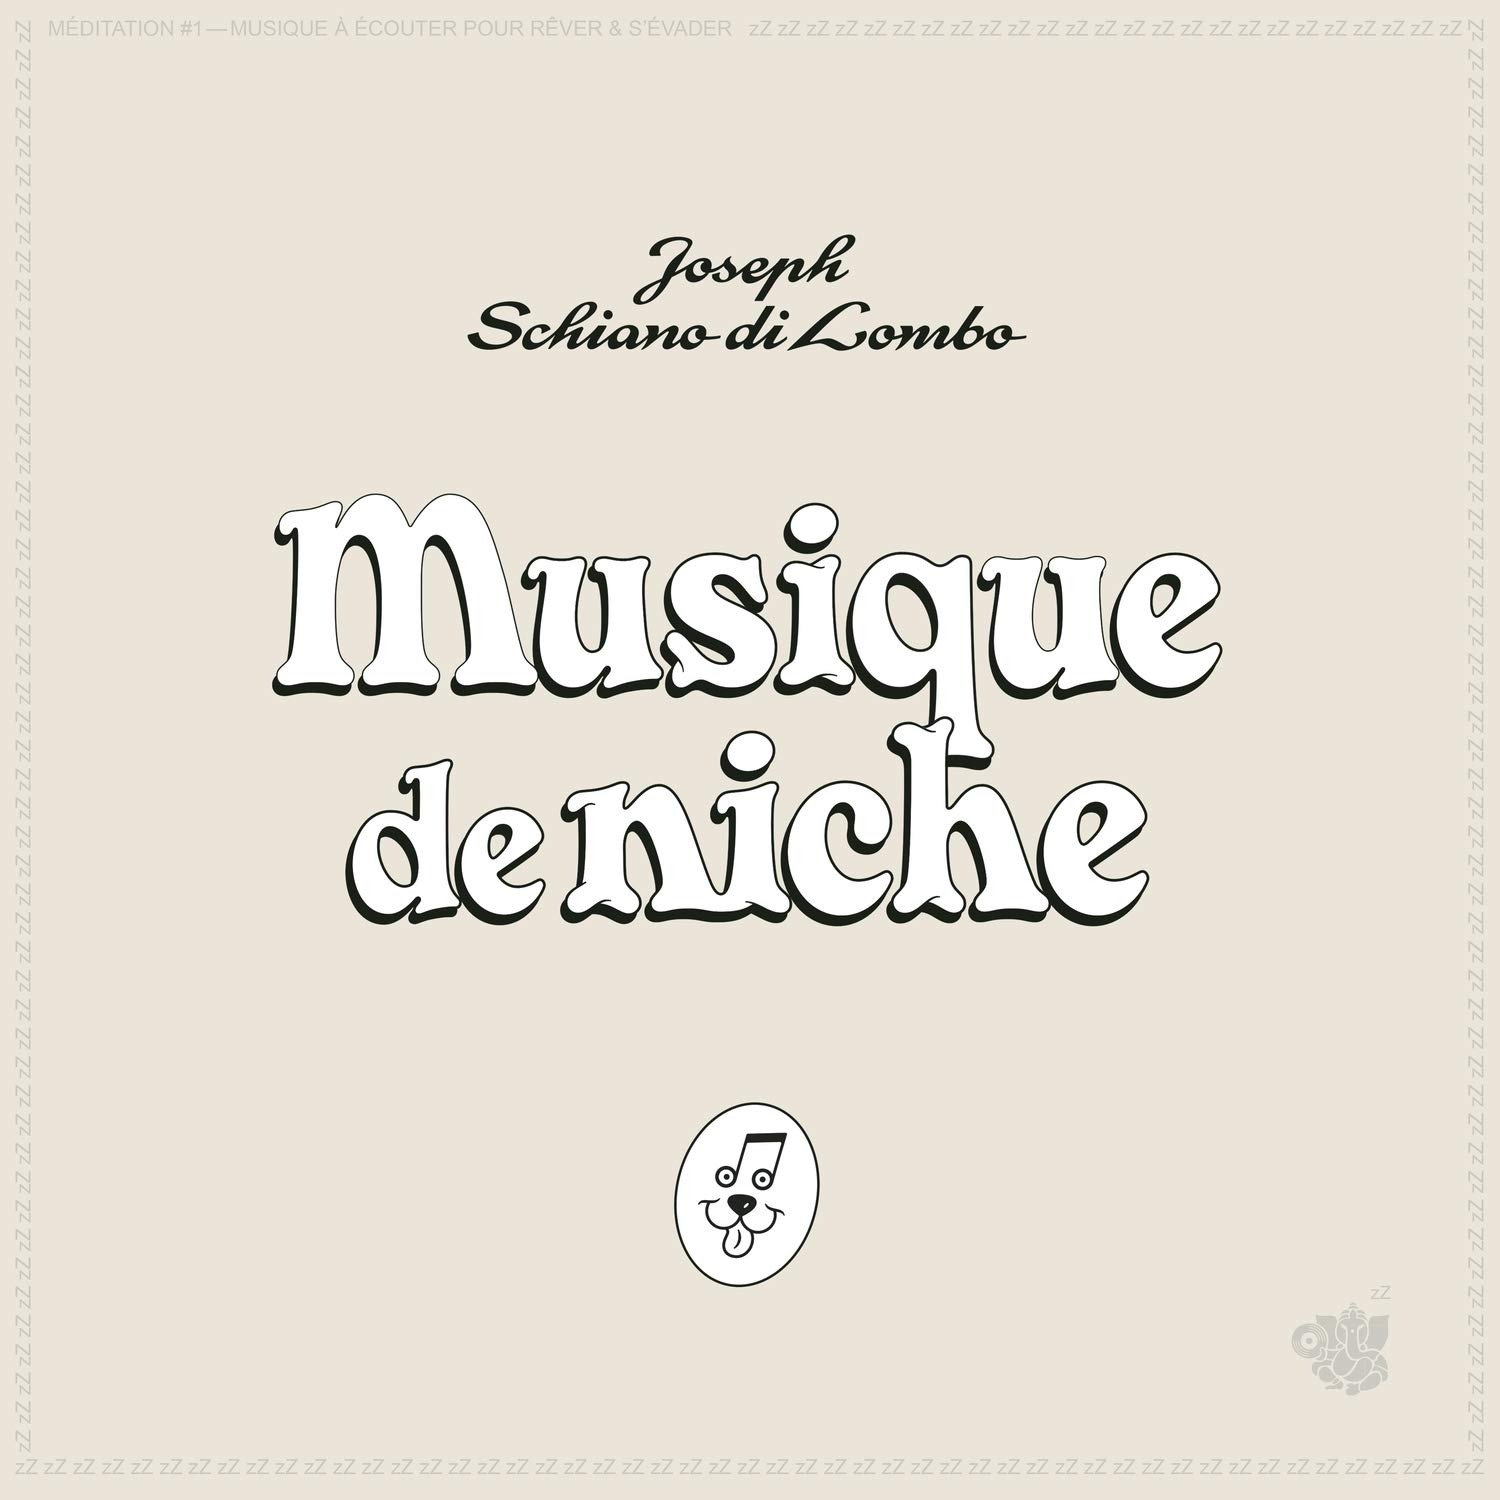 CD Shop - LOMBO, JOSEPH SCHIANO DI MUSIQUE DE NICHE